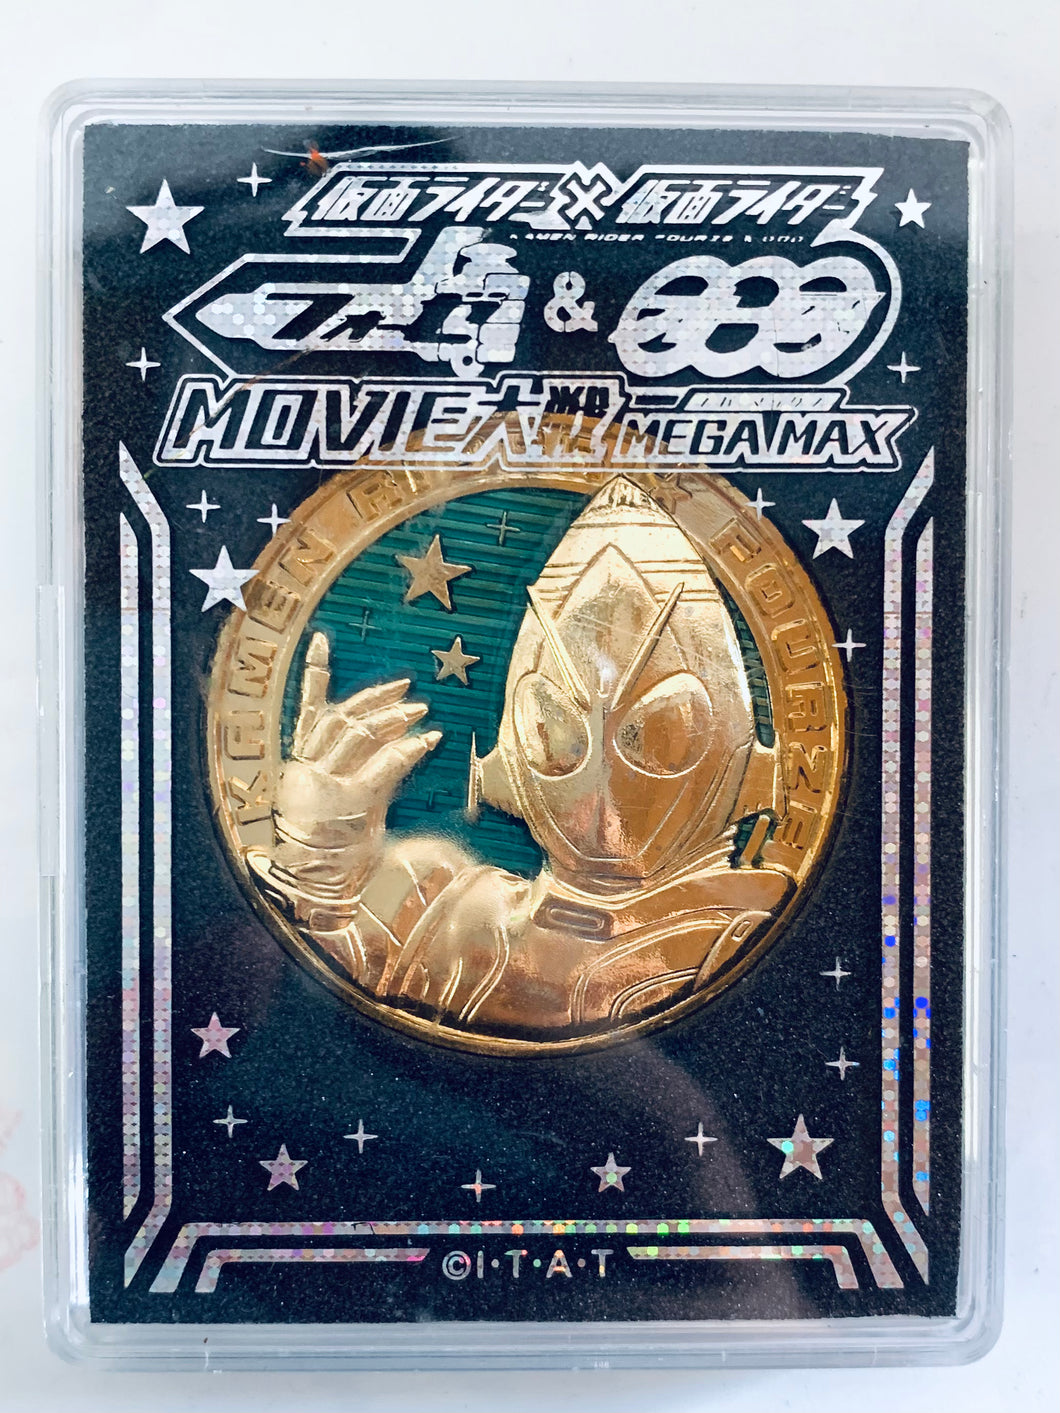 Kamen Rider × Kamen Rider Fourze & OOO: Movie War Mega Max Commemorative Medal